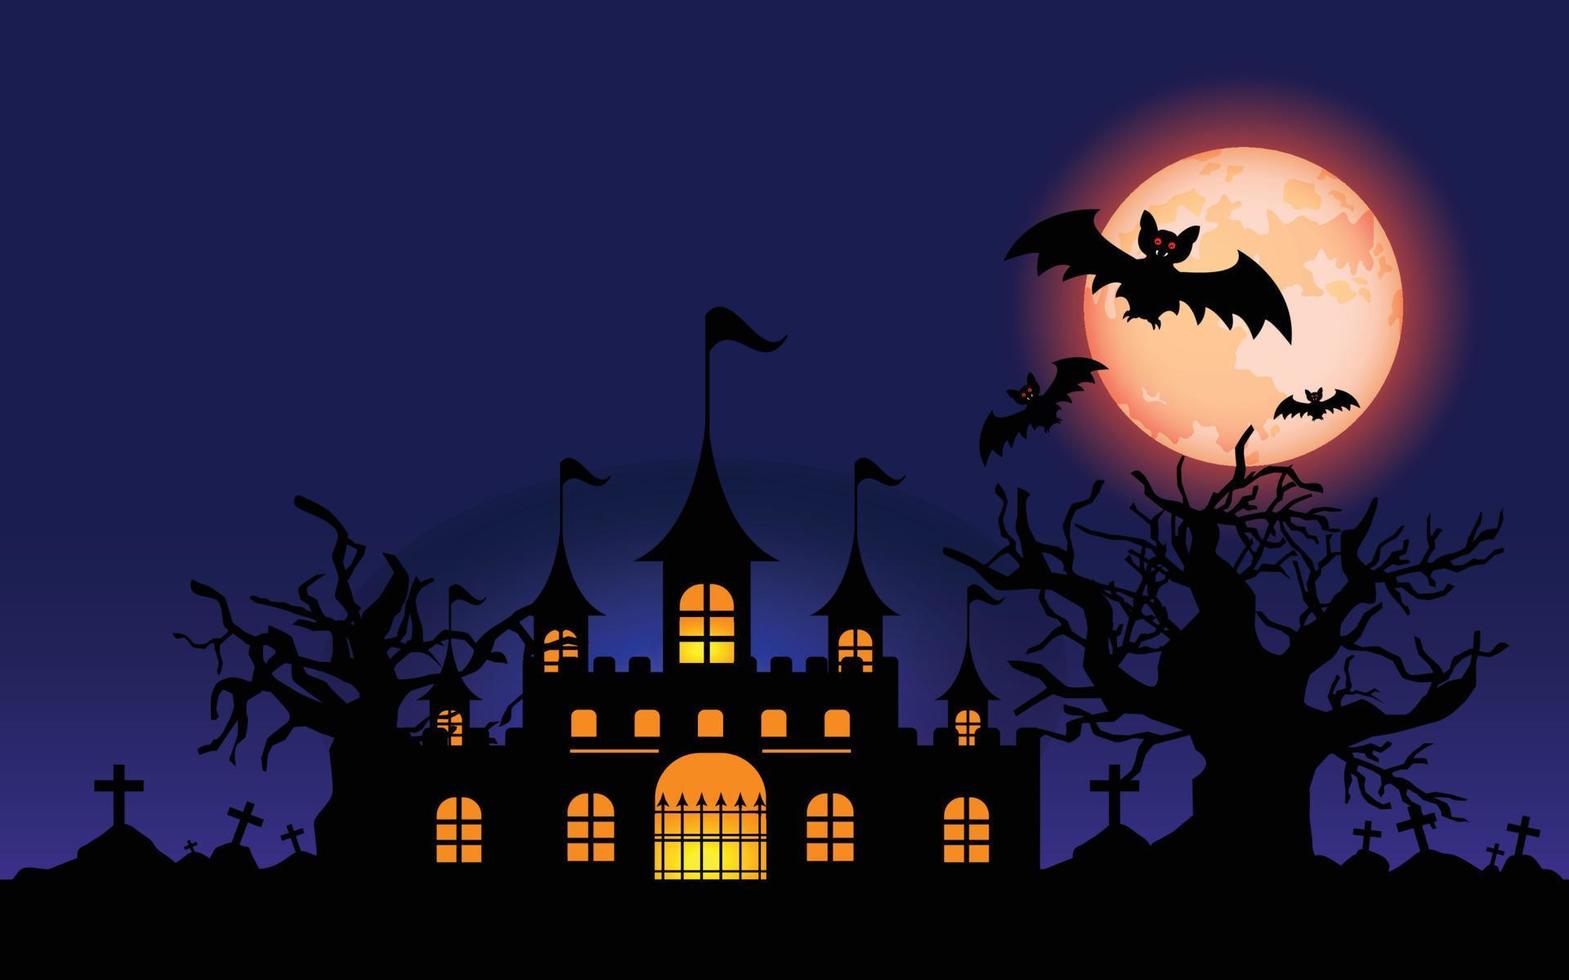 feliz halloween, manos y murciélagos zombies, letras navideñas para banner, ilustración vectorial. vector